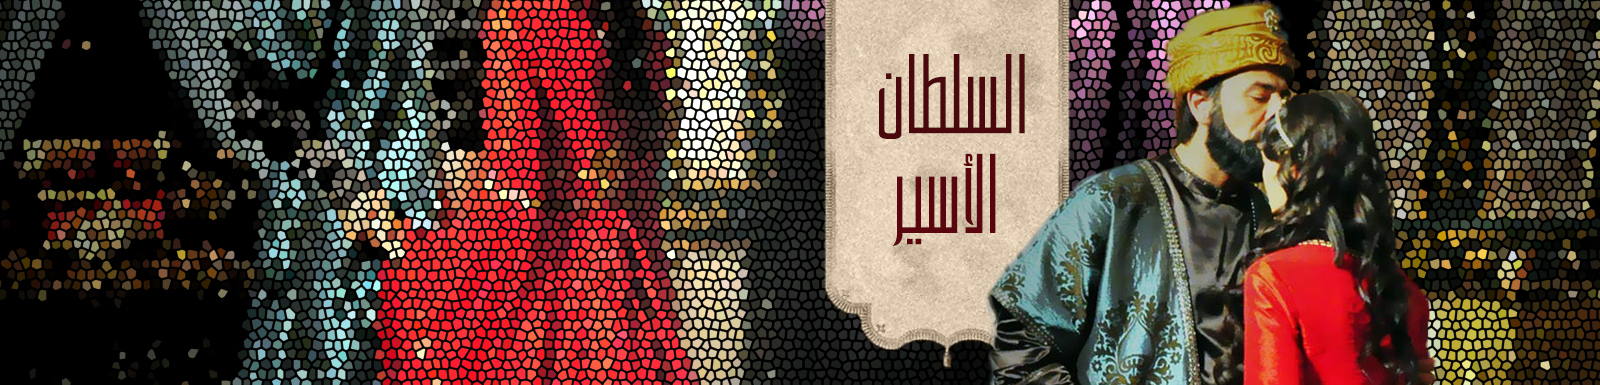 مشاهدة وتحميل مسلسل السلطان الأسير الحلقة 2 الثانية كاملة 2015 mbc